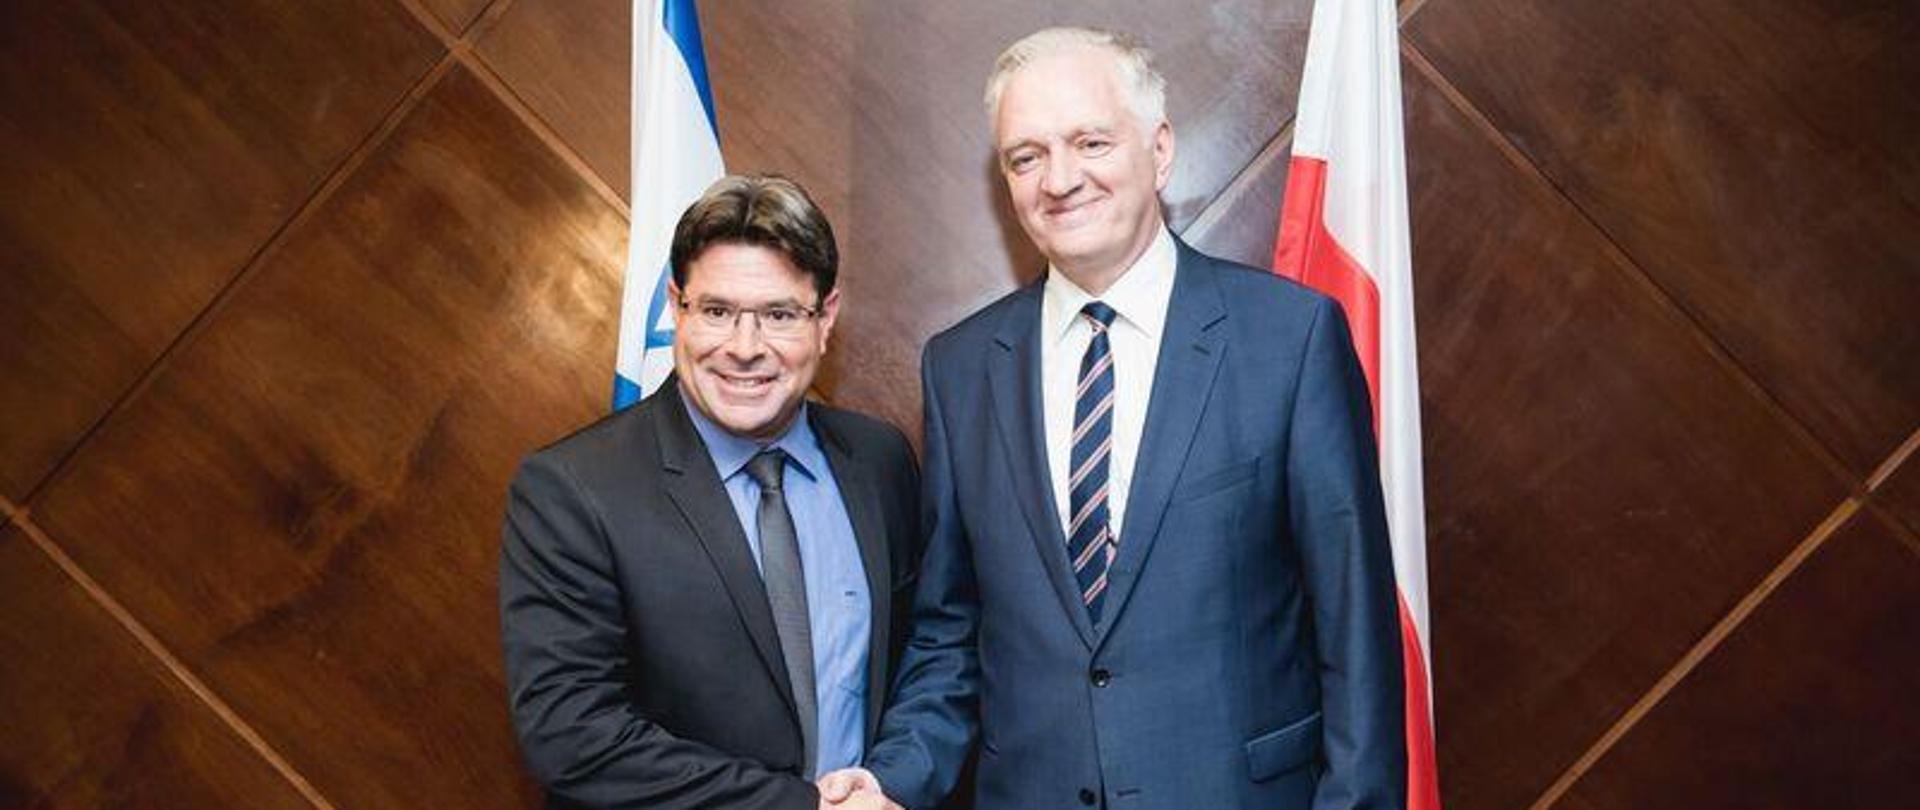 Ministrowie stoją na tle drewnianej ściany, za nimi flagi Polski i Izraela